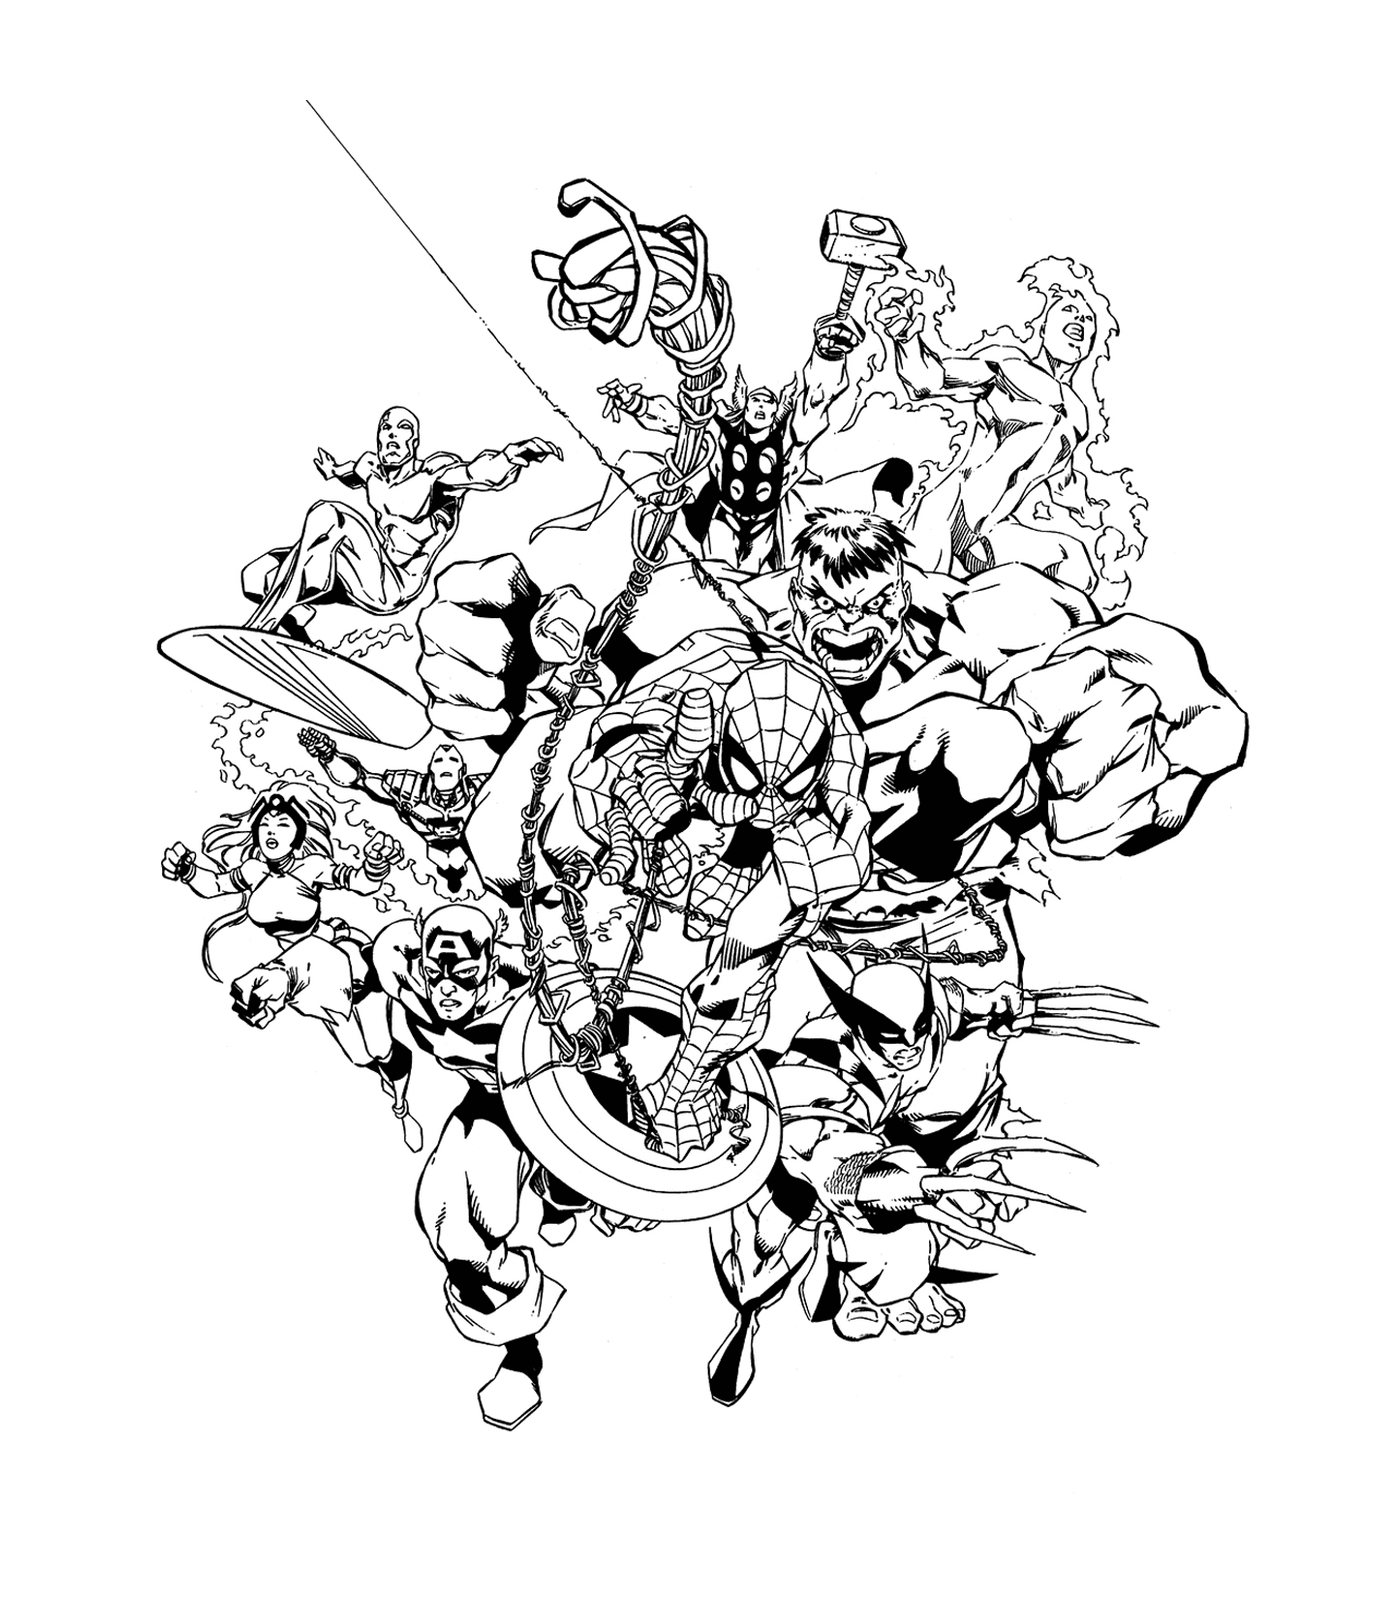  Un grupo de superhéroes se reunieron en este dibujo en blanco y negro 